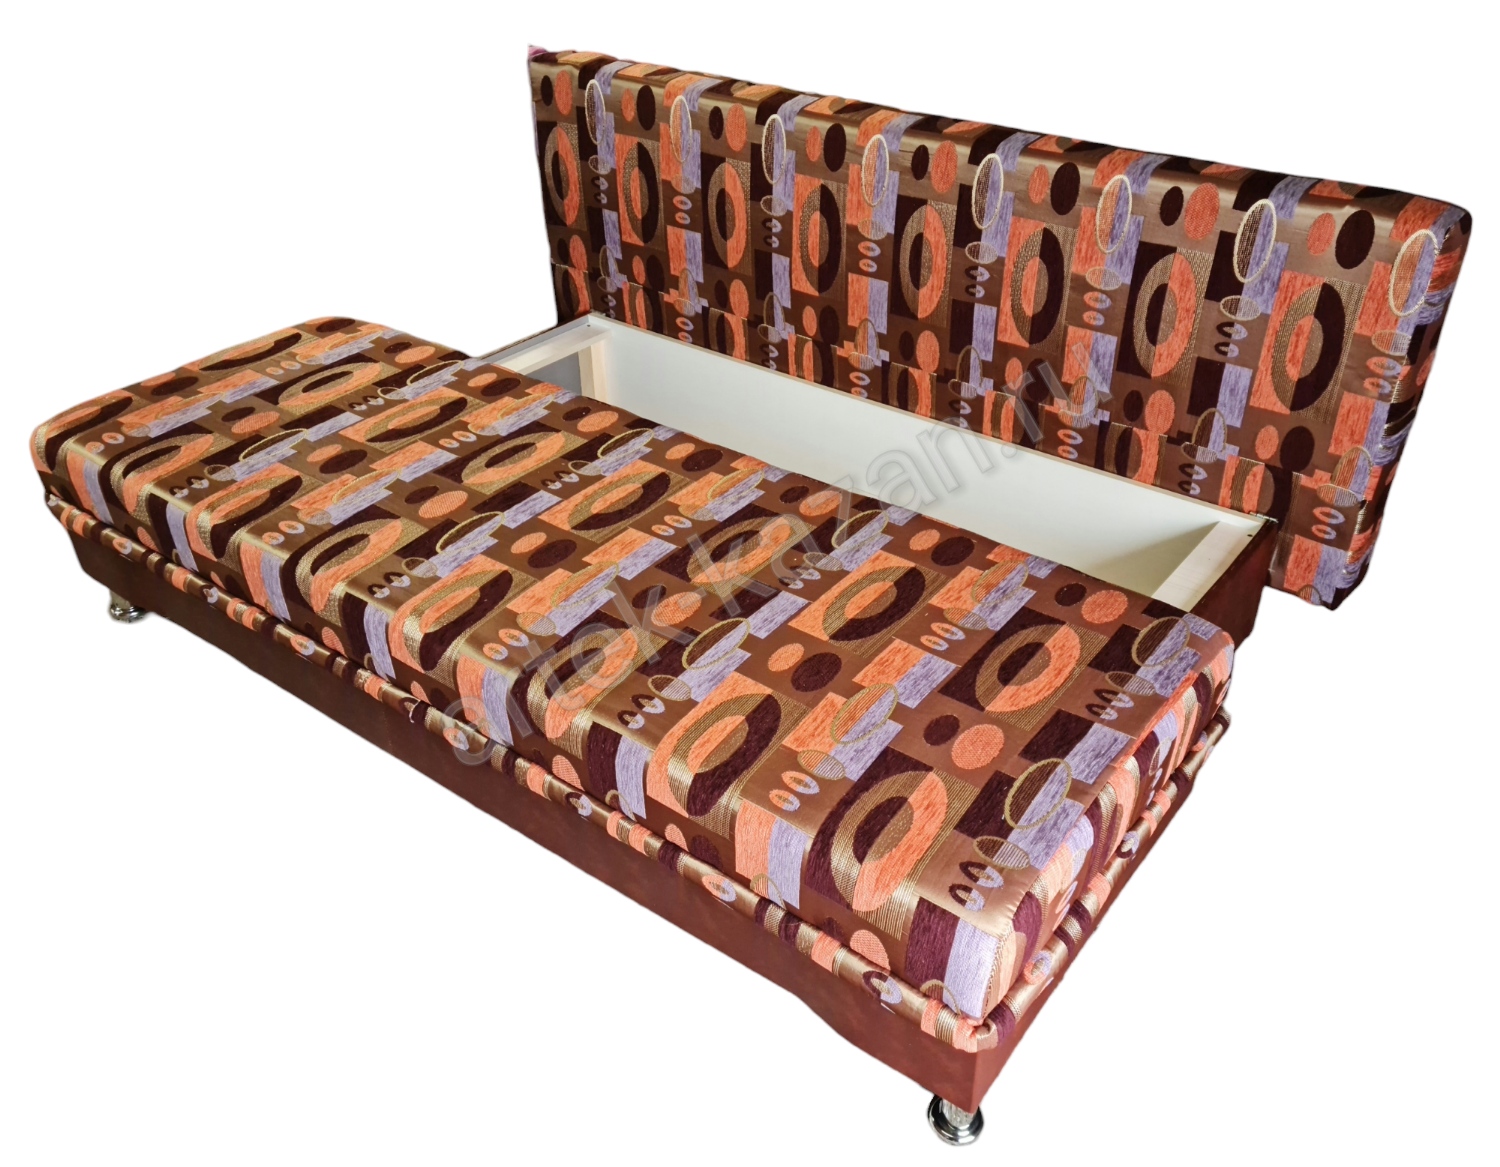 Фото 5. Купить недорогой диван по низкой цене от производителя можно у нас.